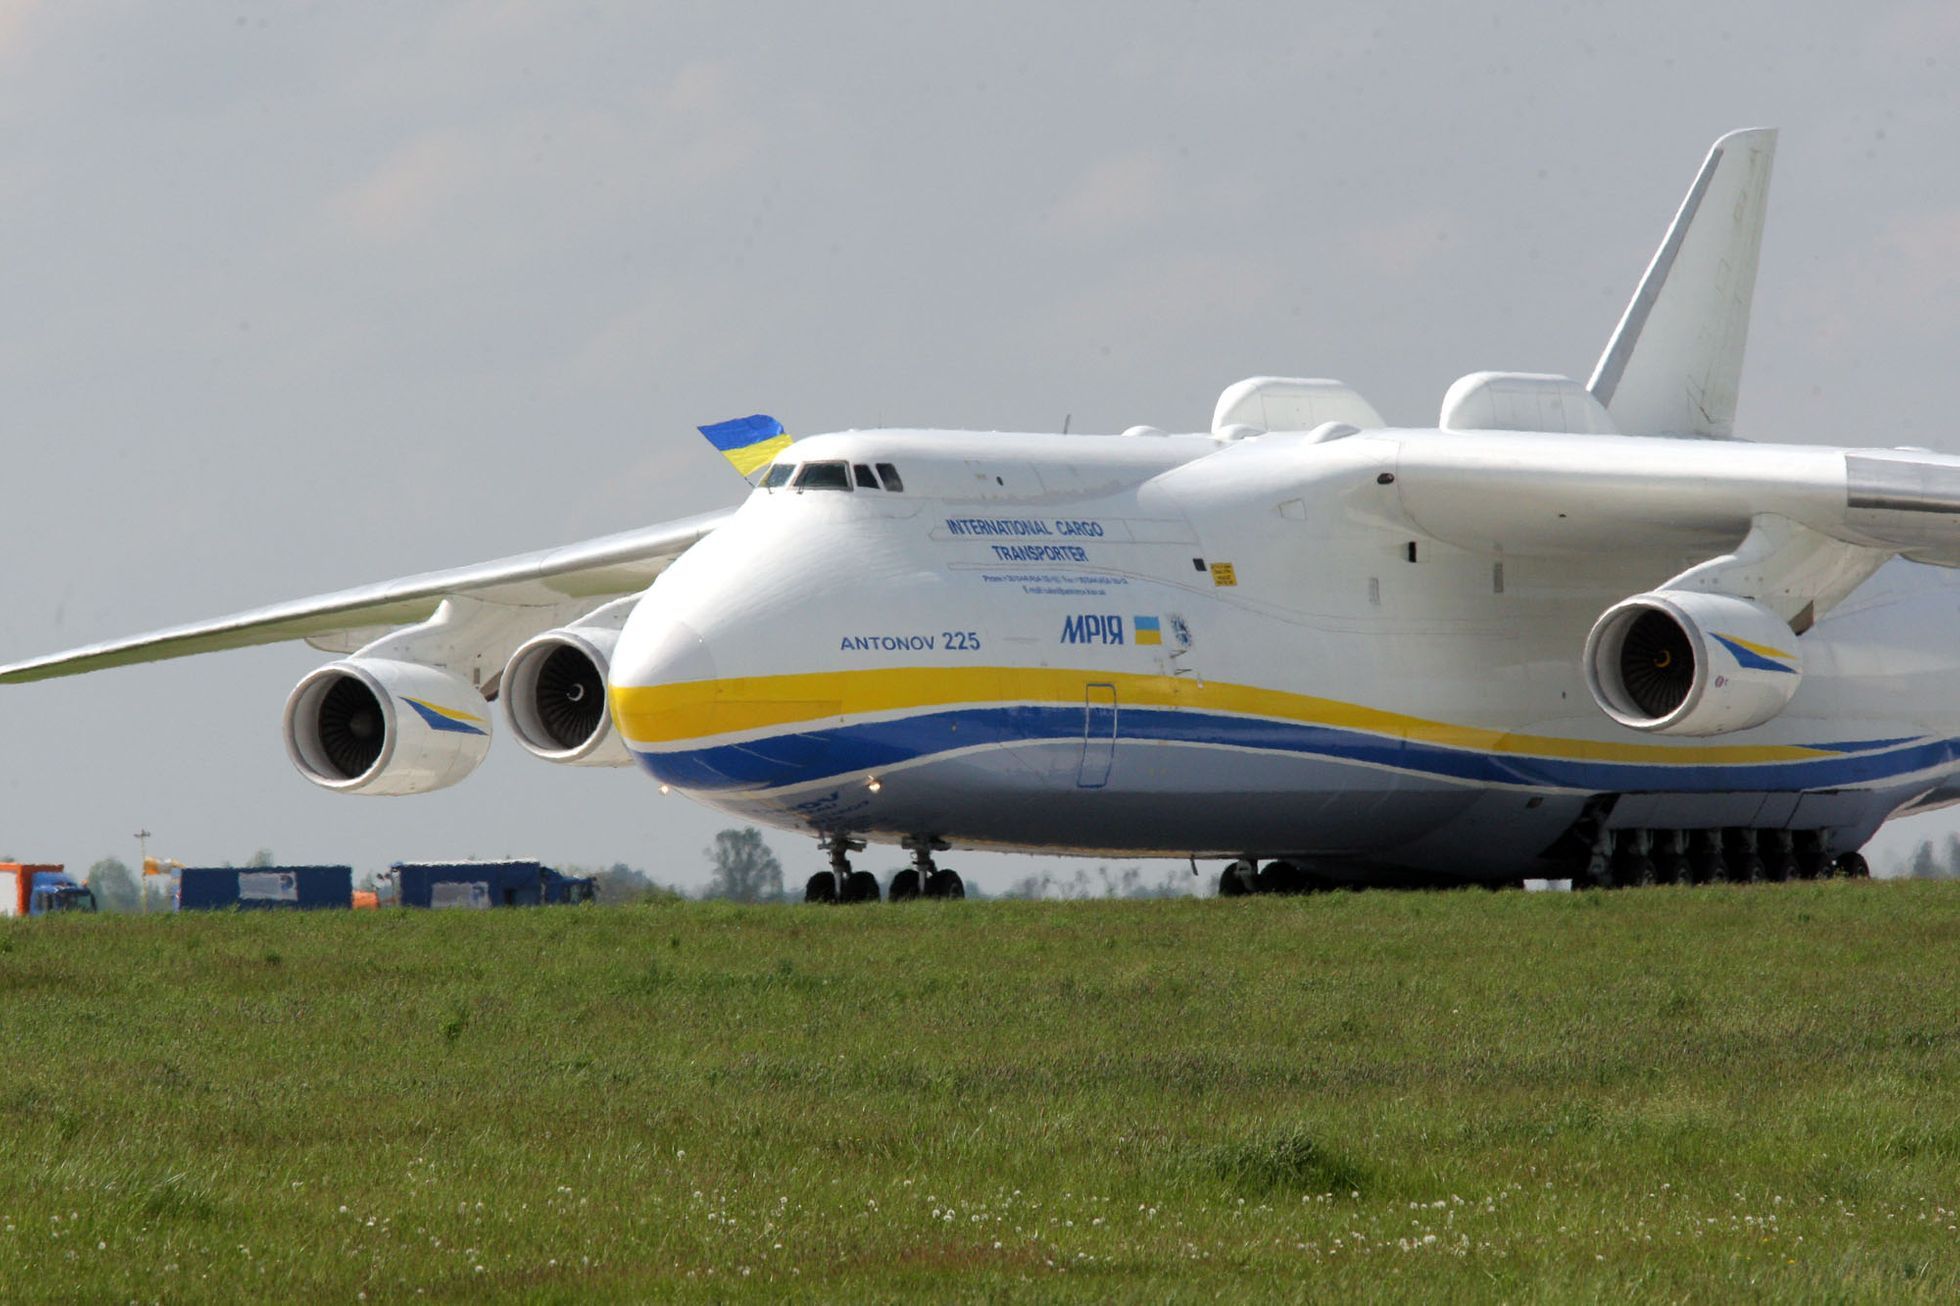 největší letadlo světa v Česku lovci snímků čekají na svůj úlovek i